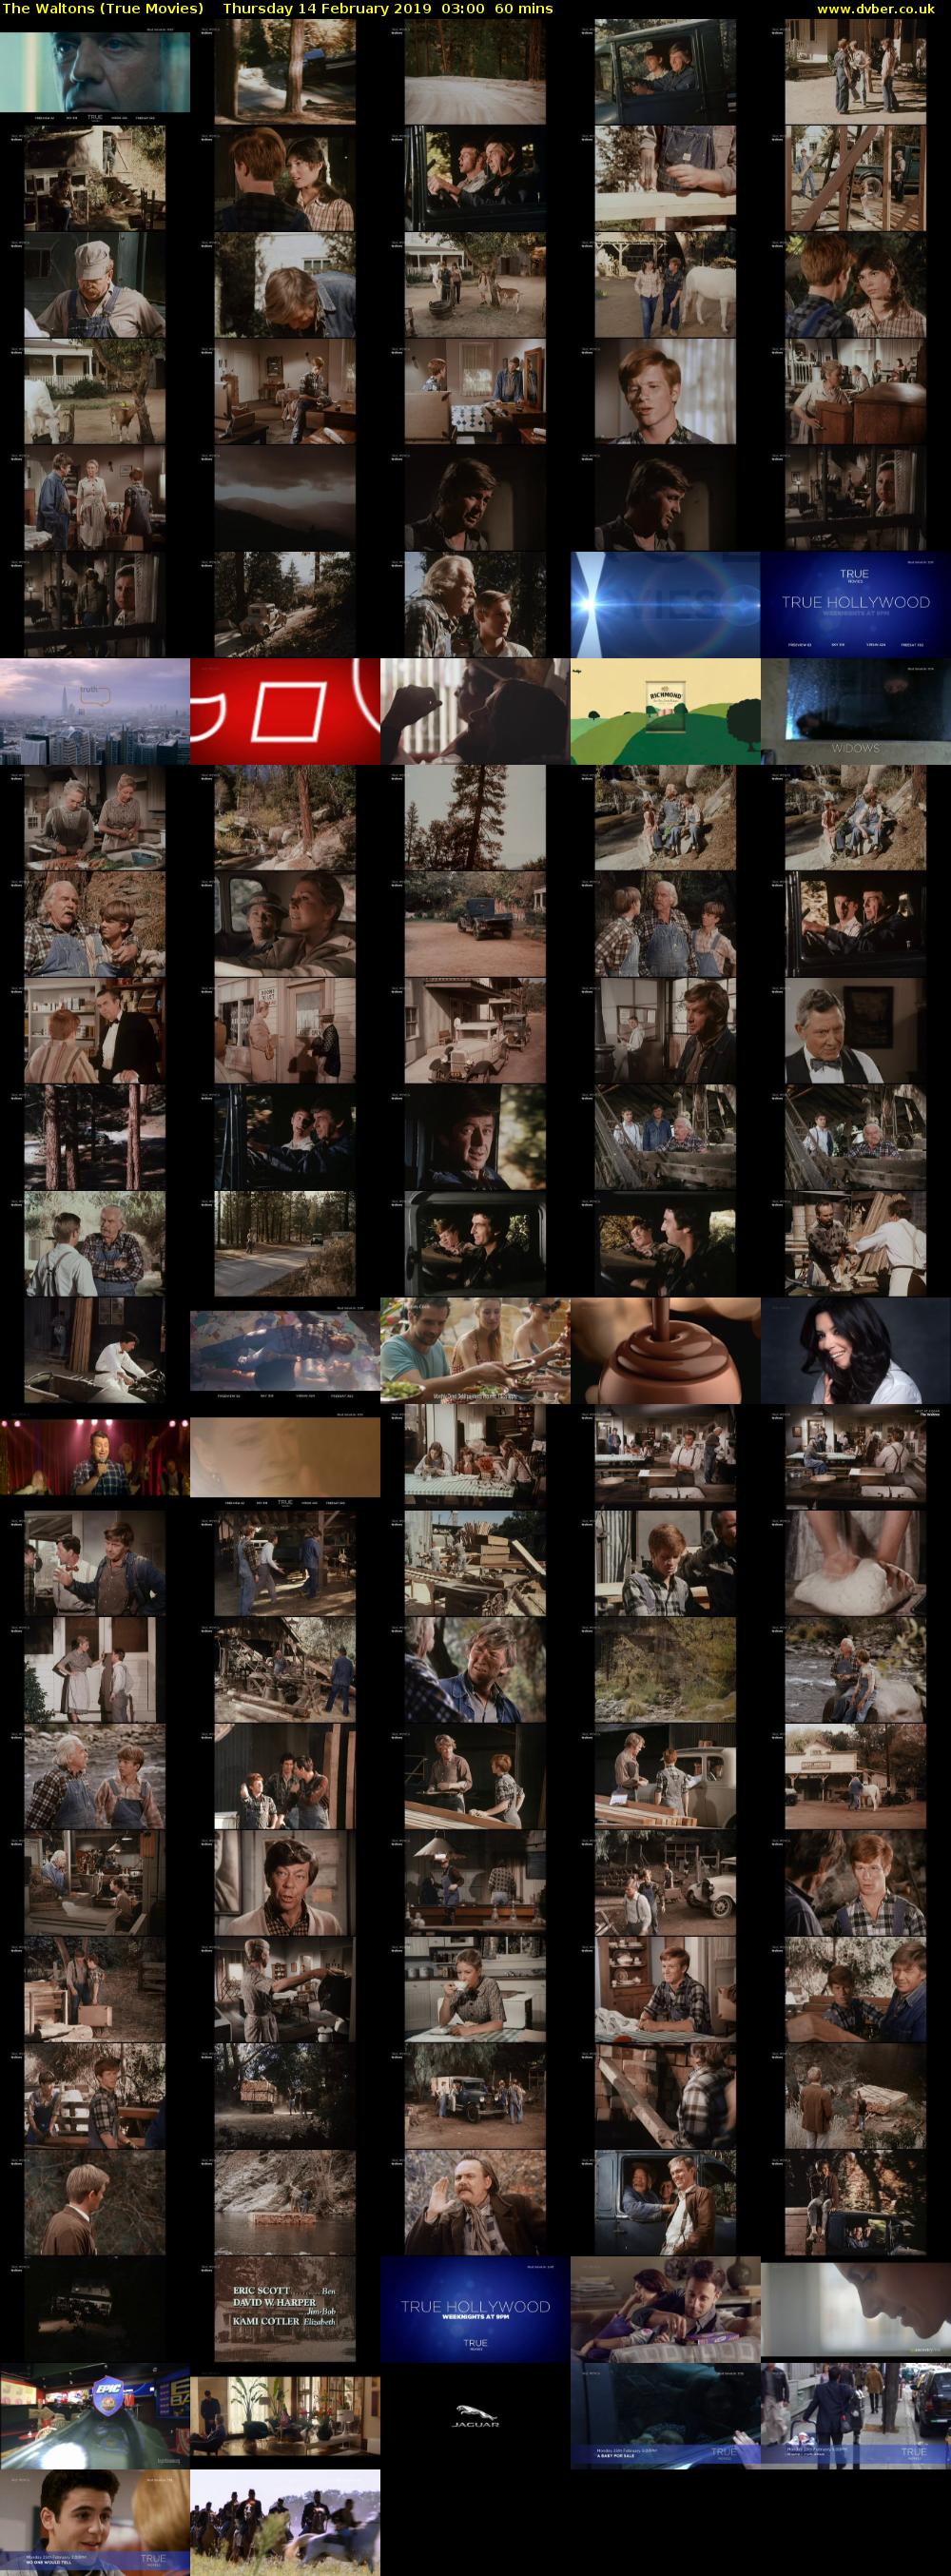 The Waltons (True Movies) Thursday 14 February 2019 03:00 - 04:00